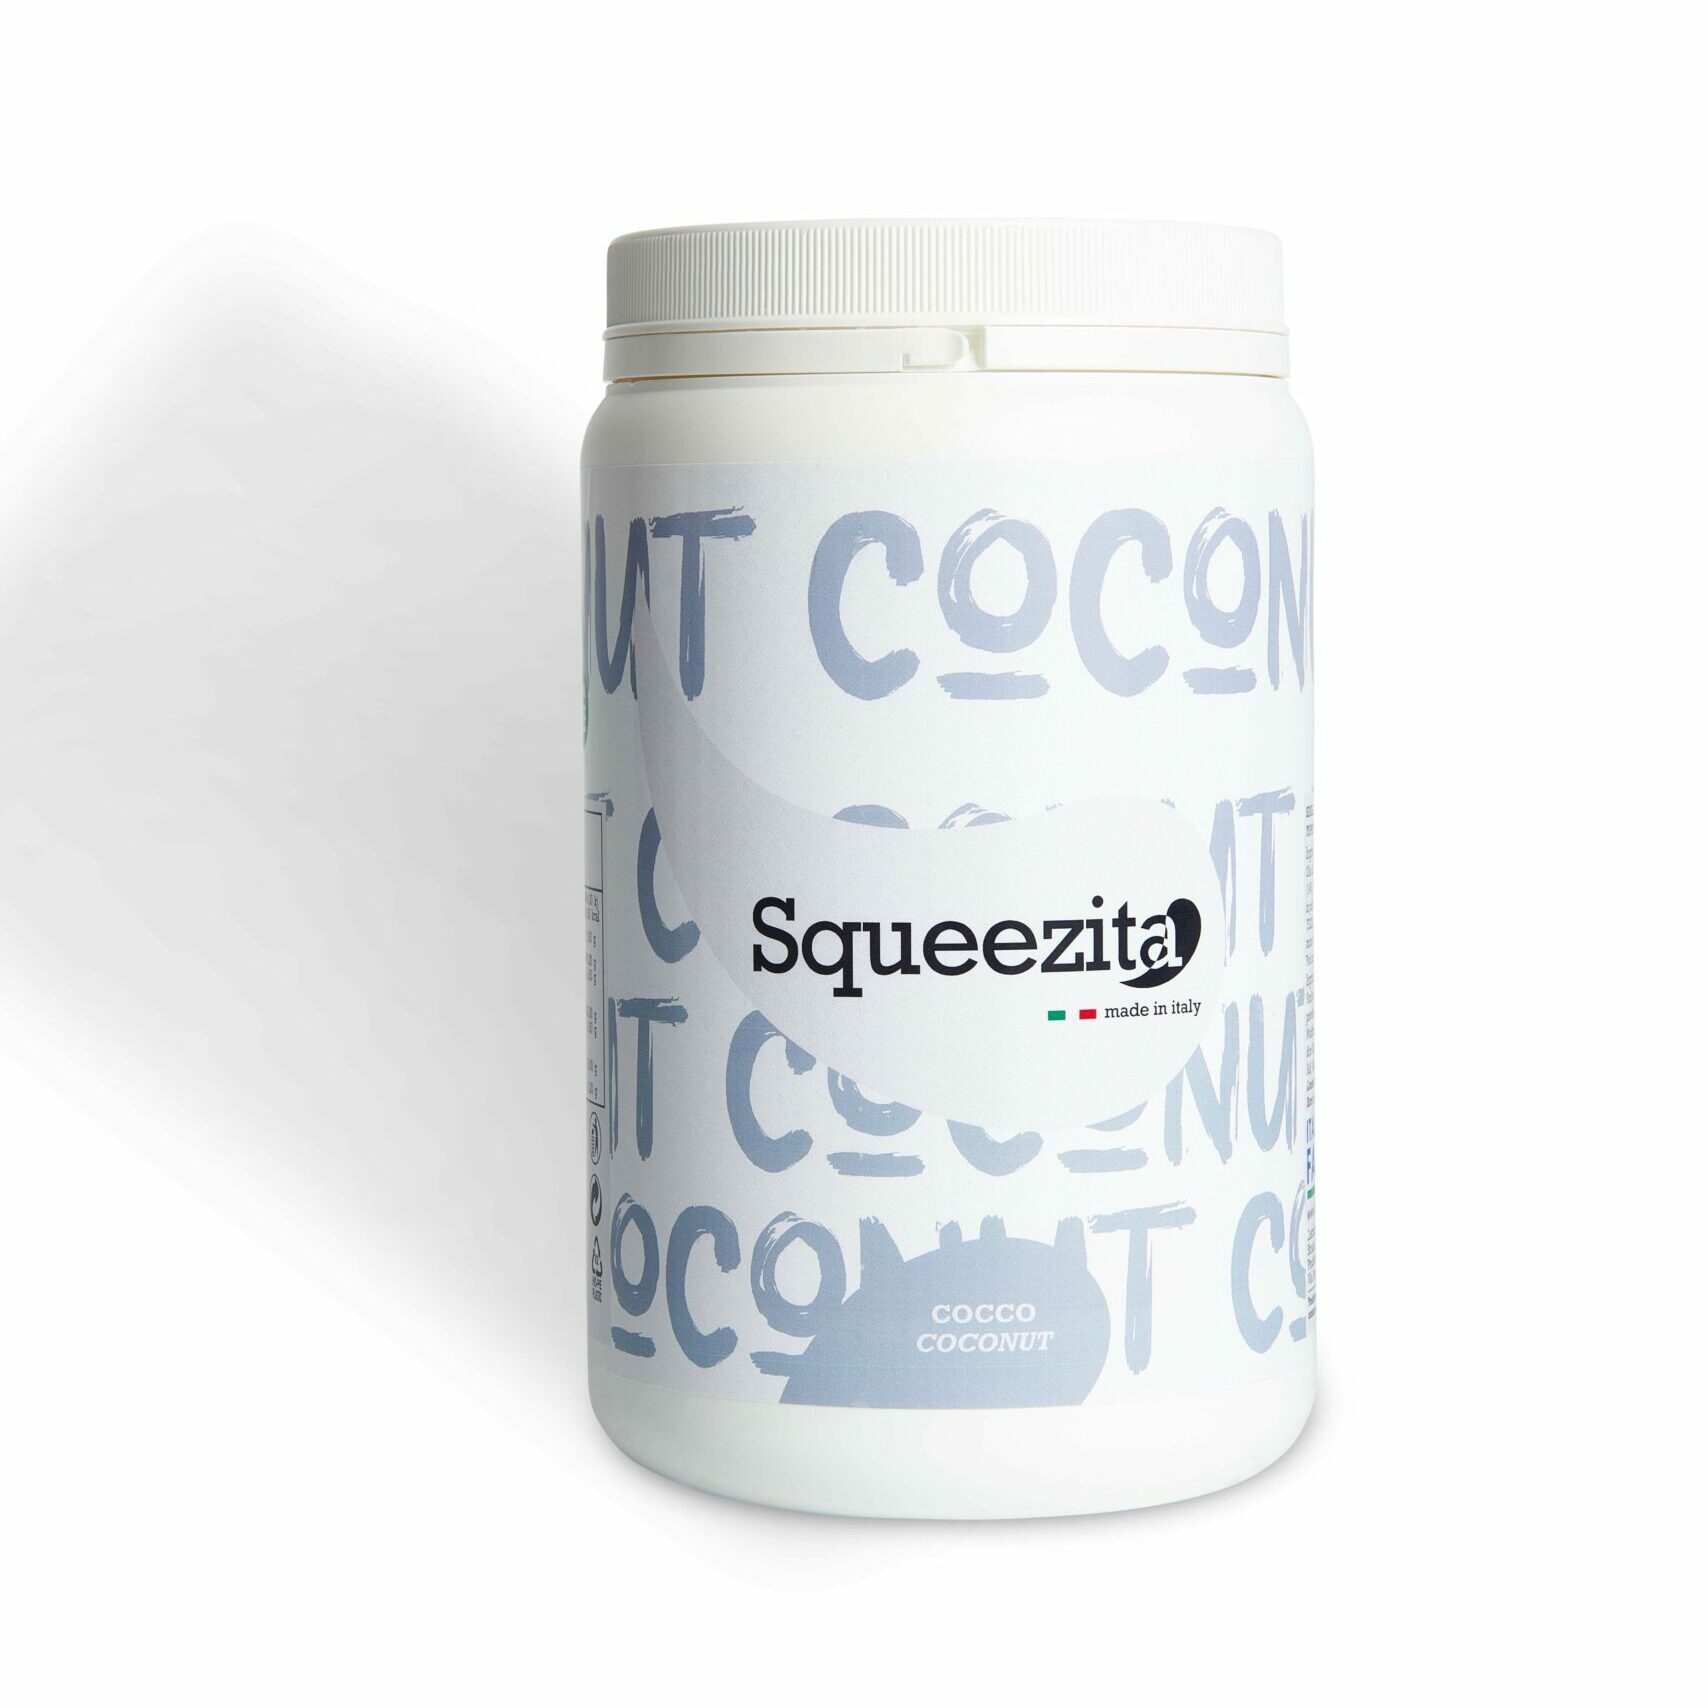 Squeezita Coconut